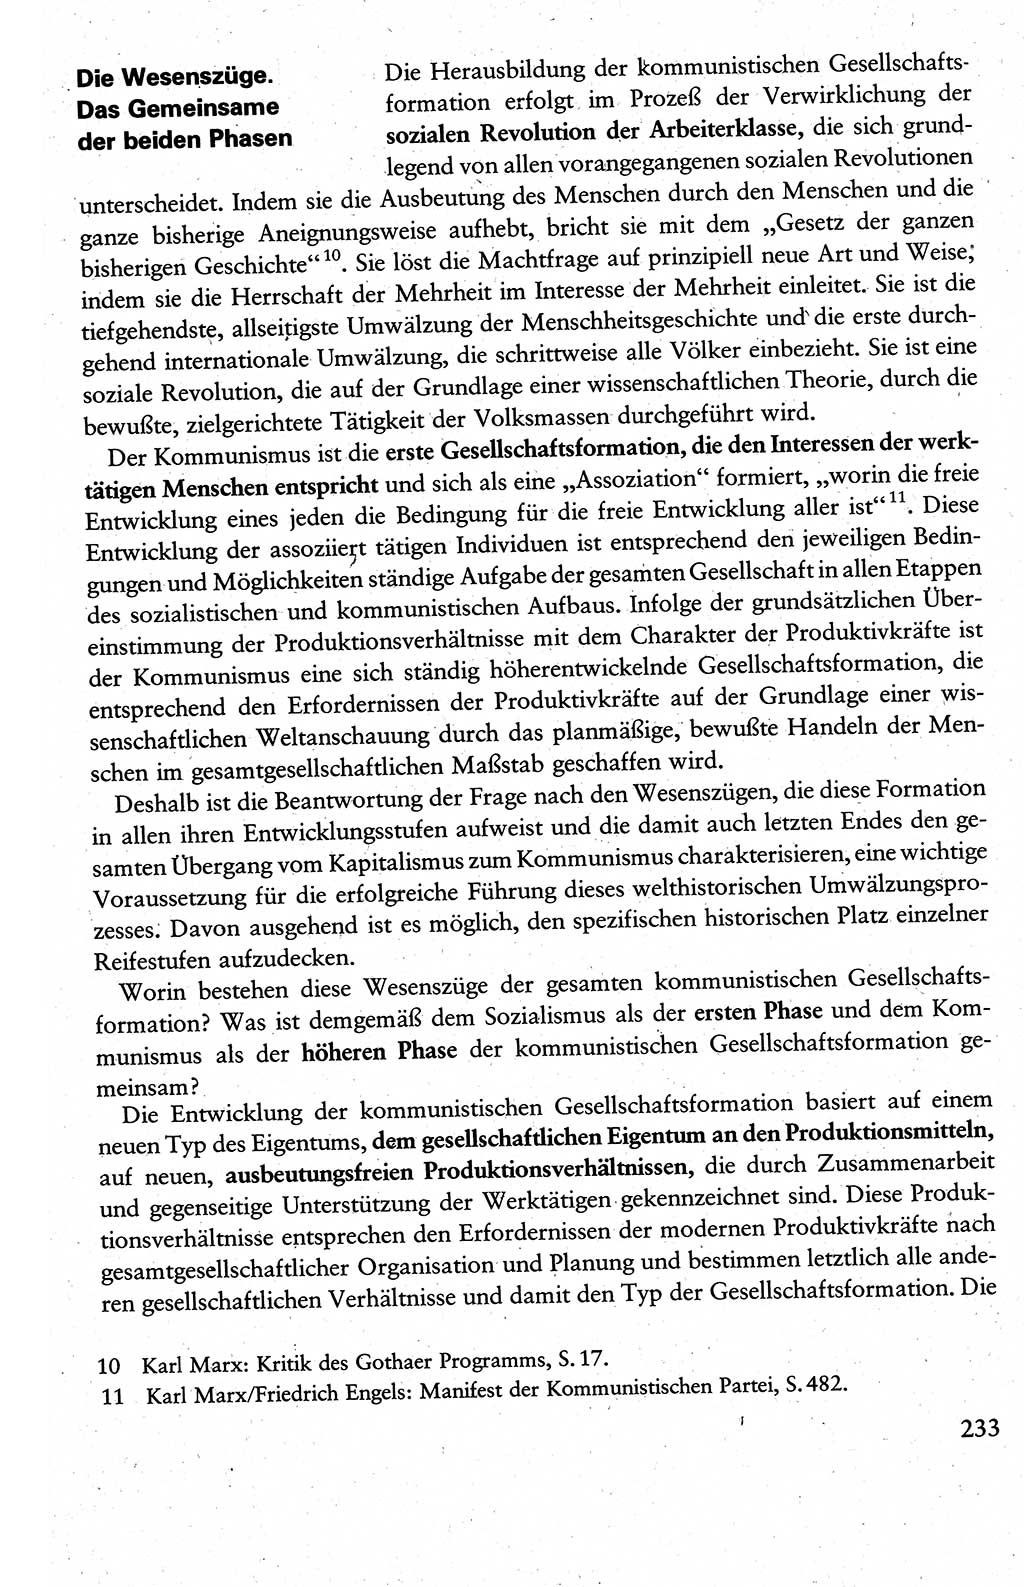 Wissenschaftlicher Kommunismus [Deutsche Demokratische Republik (DDR)], Lehrbuch für das marxistisch-leninistische Grundlagenstudium 1983, Seite 233 (Wiss. Komm. DDR Lb. 1983, S. 233)